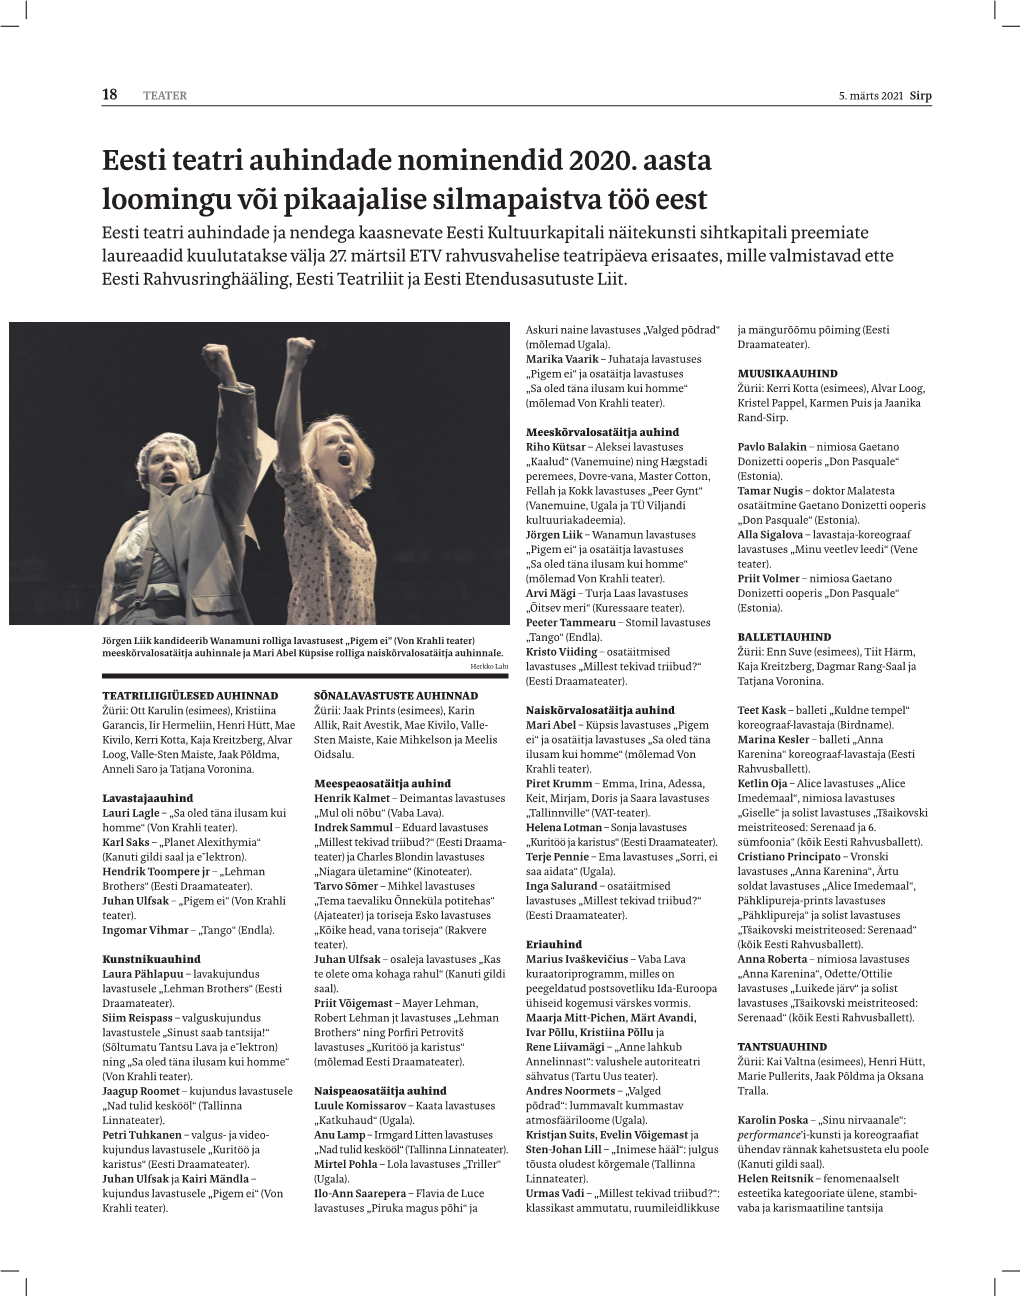 Eesti Teatri Auhindade Nominendid 2020. Aasta Loomingu Või